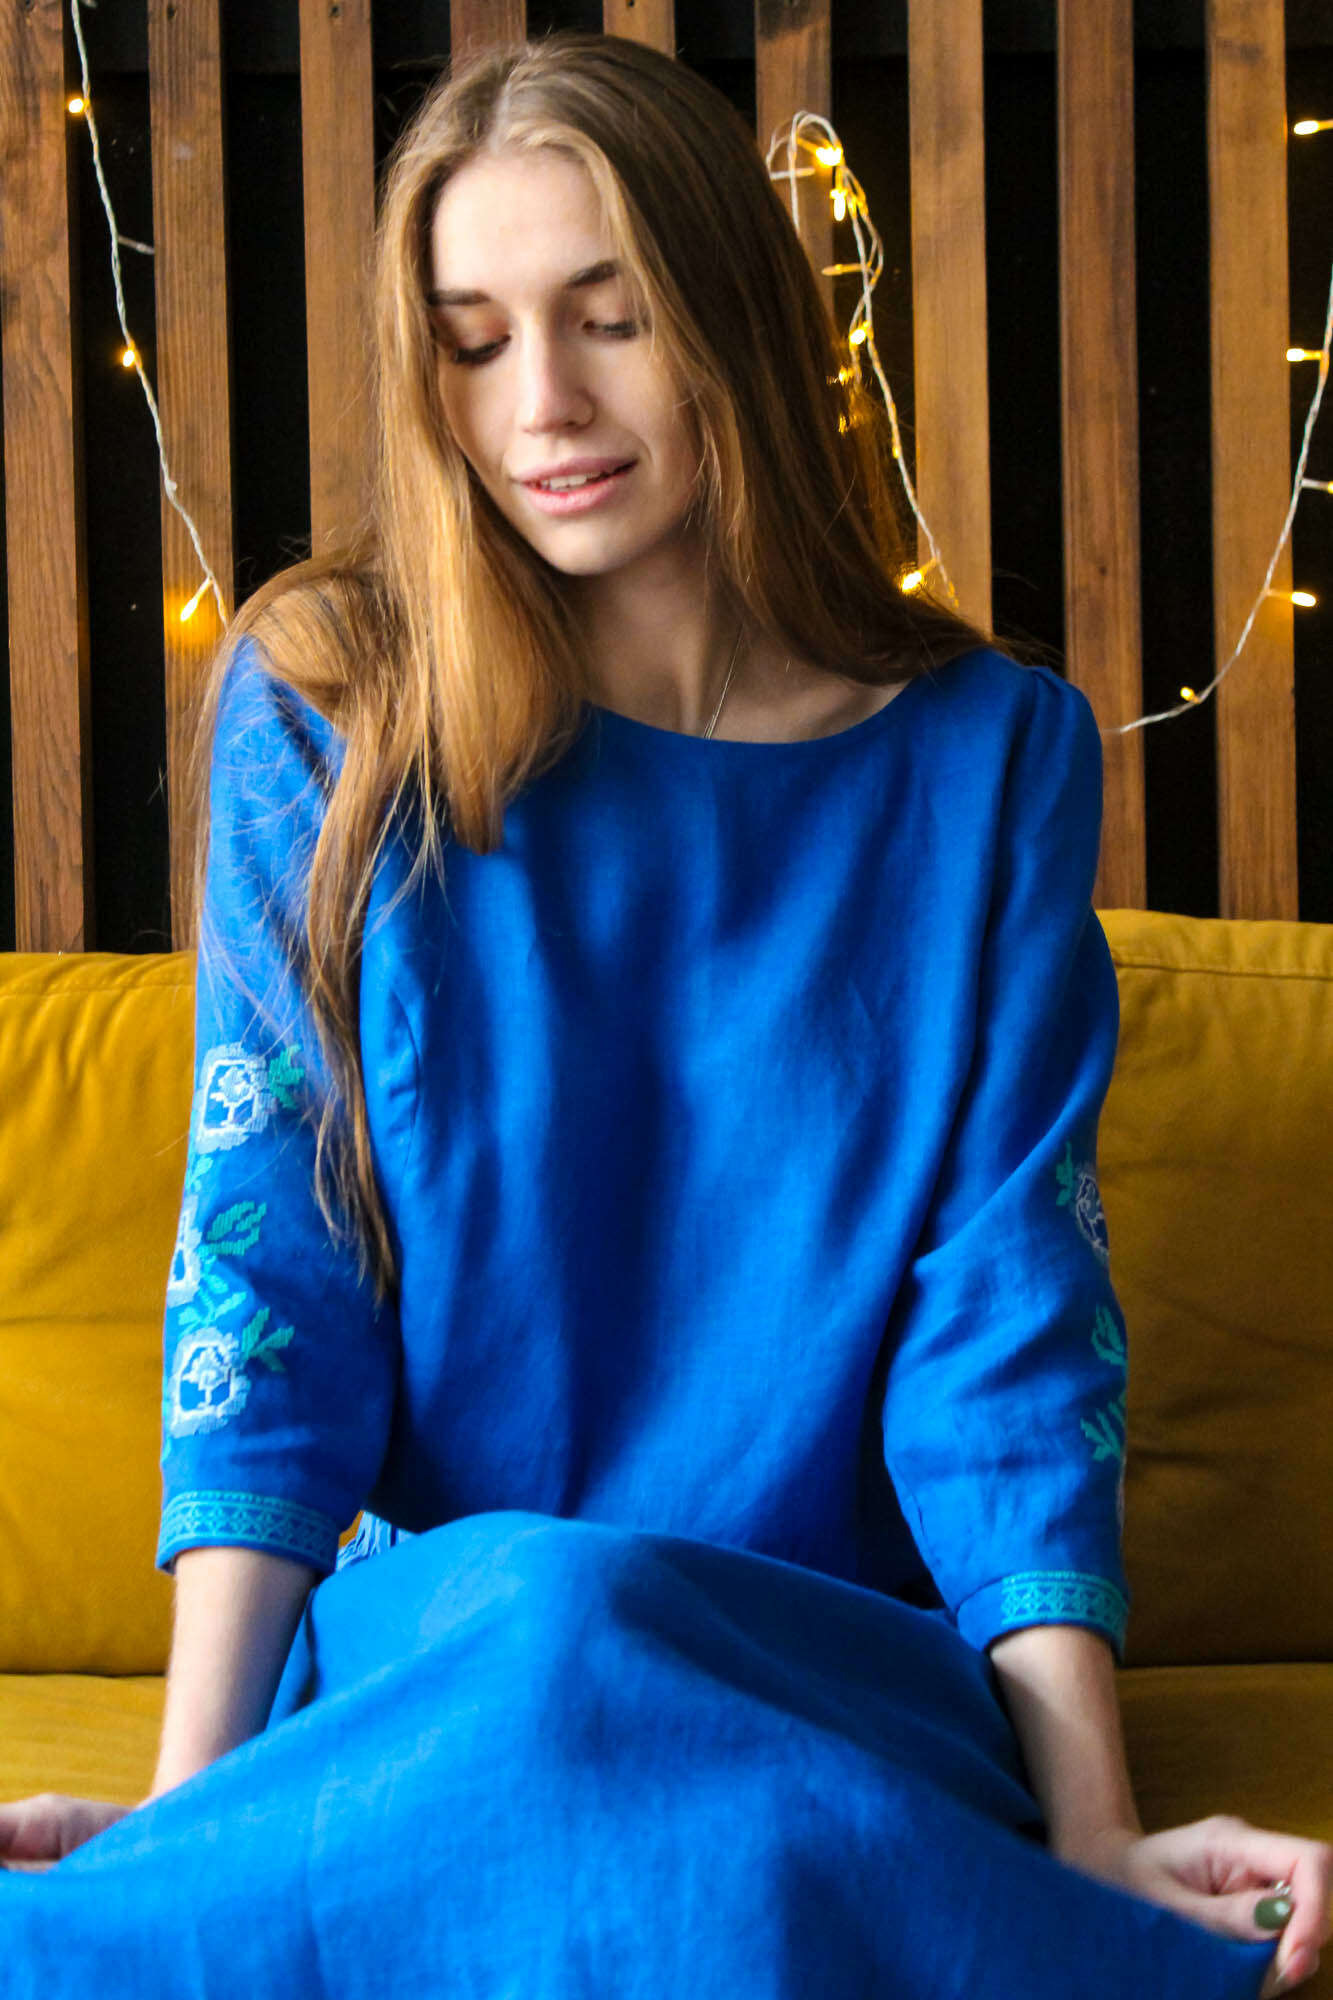 Женская одежда - приемлемые цены в интернет магазине kormstroytorg.ru